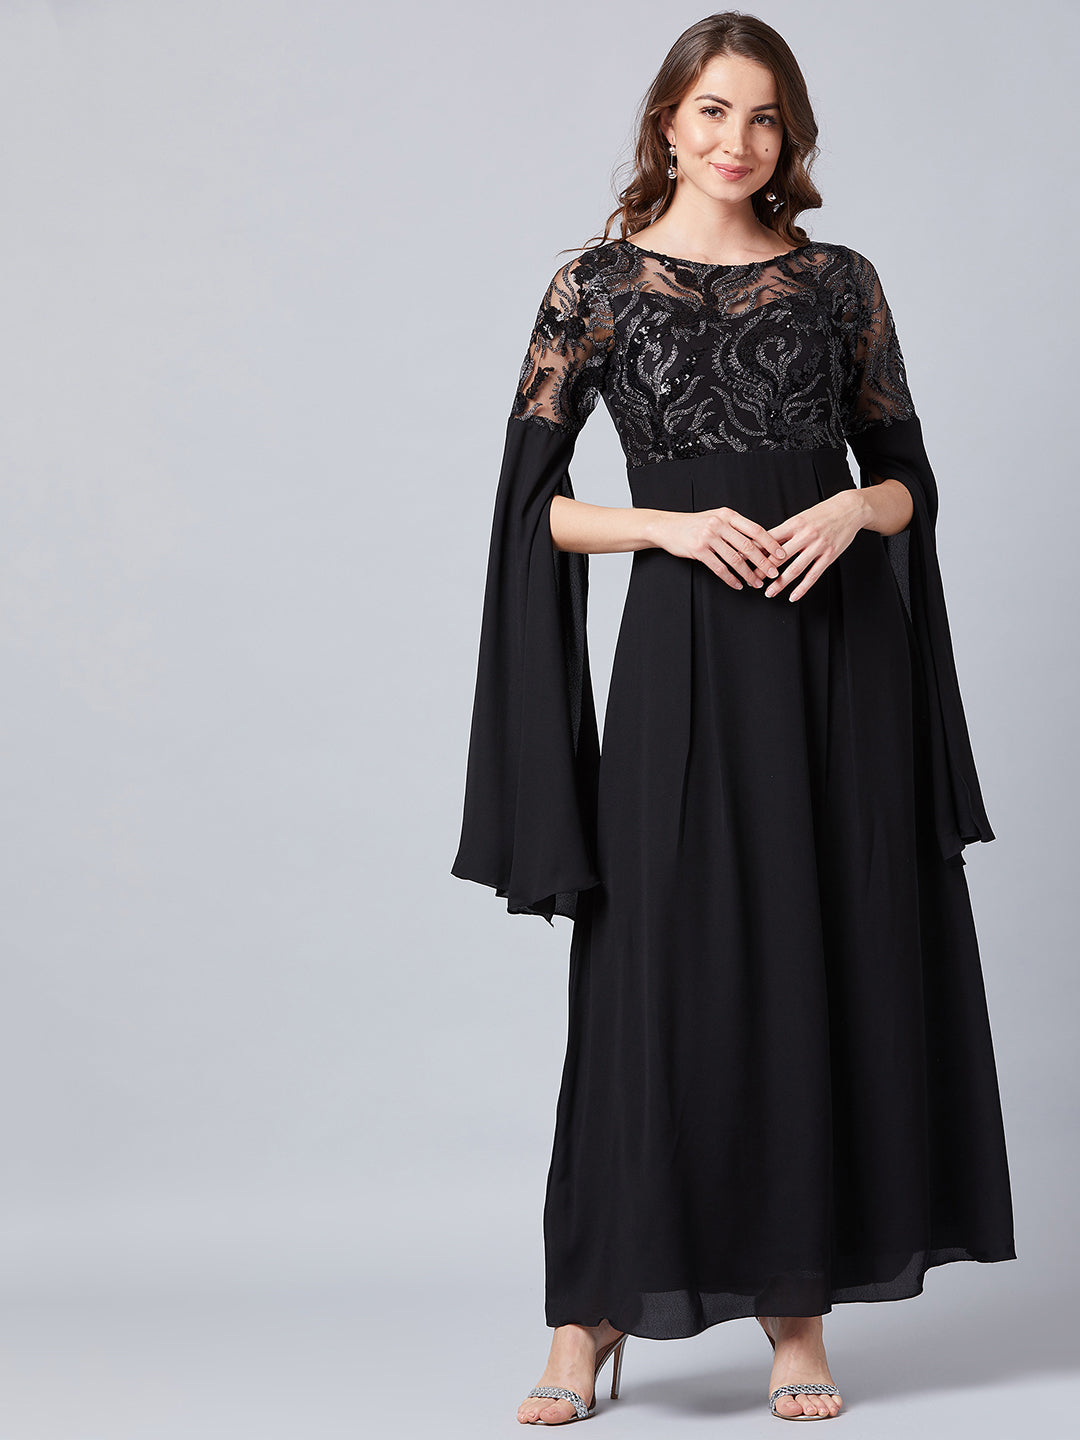 Athena Black Embellished Slit Sleeves Maxi Dress - Athena Lifestyle